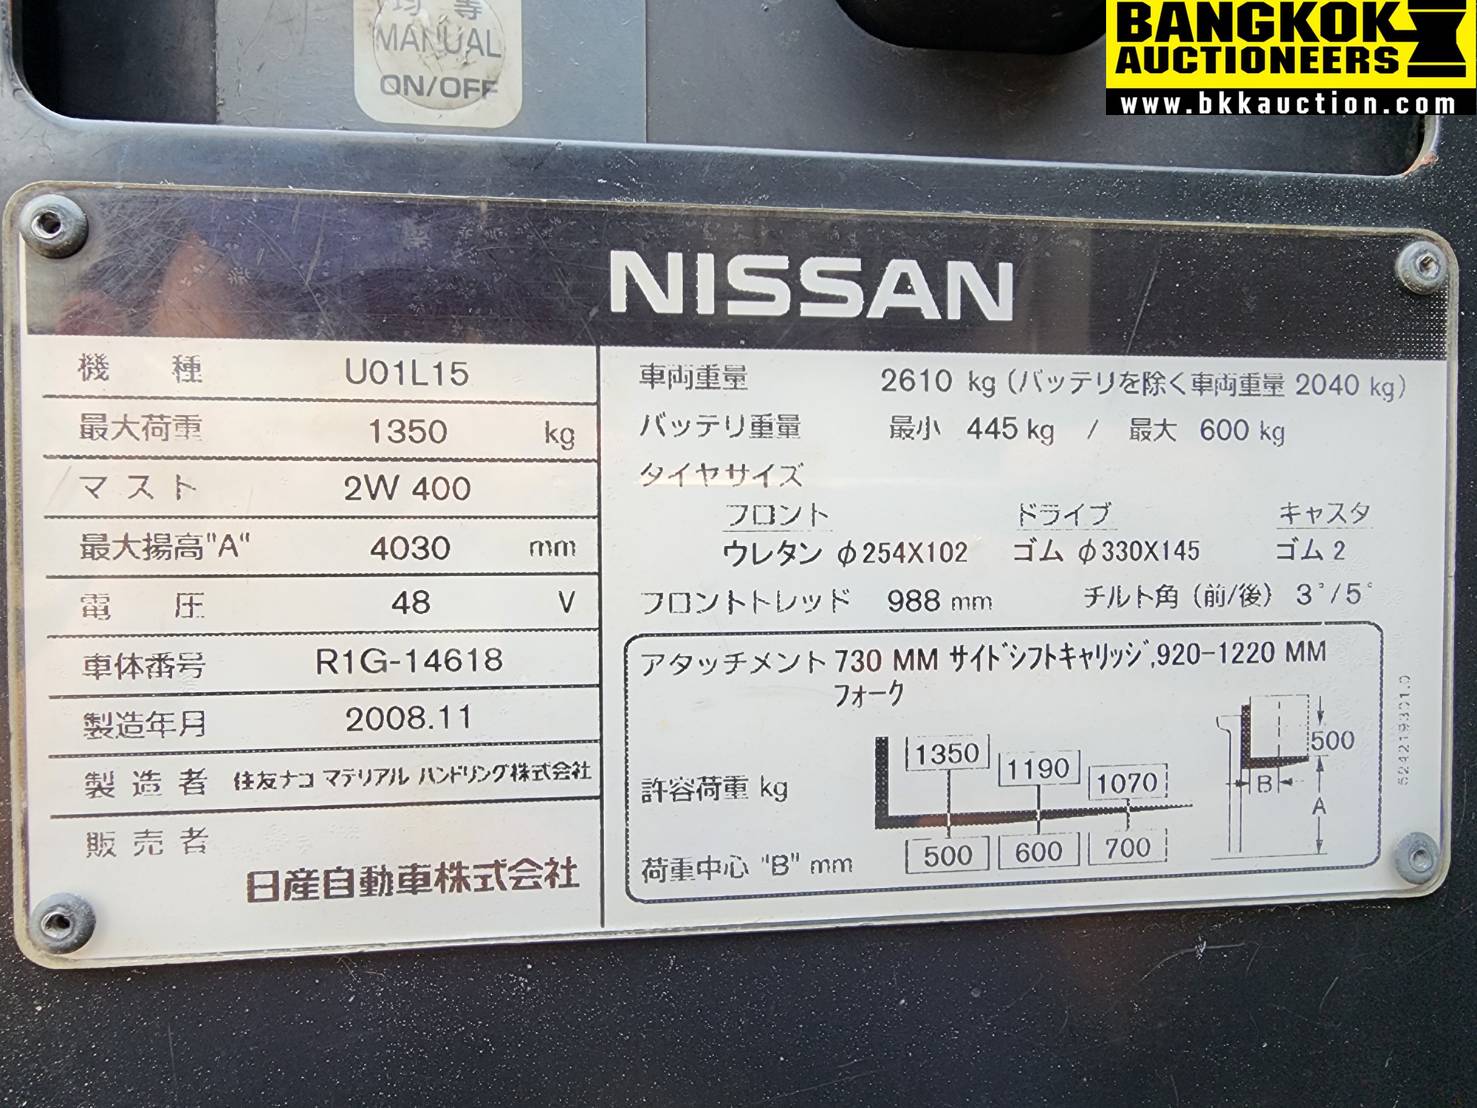 รถยกไฟฟ้า NISSAN-U01L15-R1G-14618